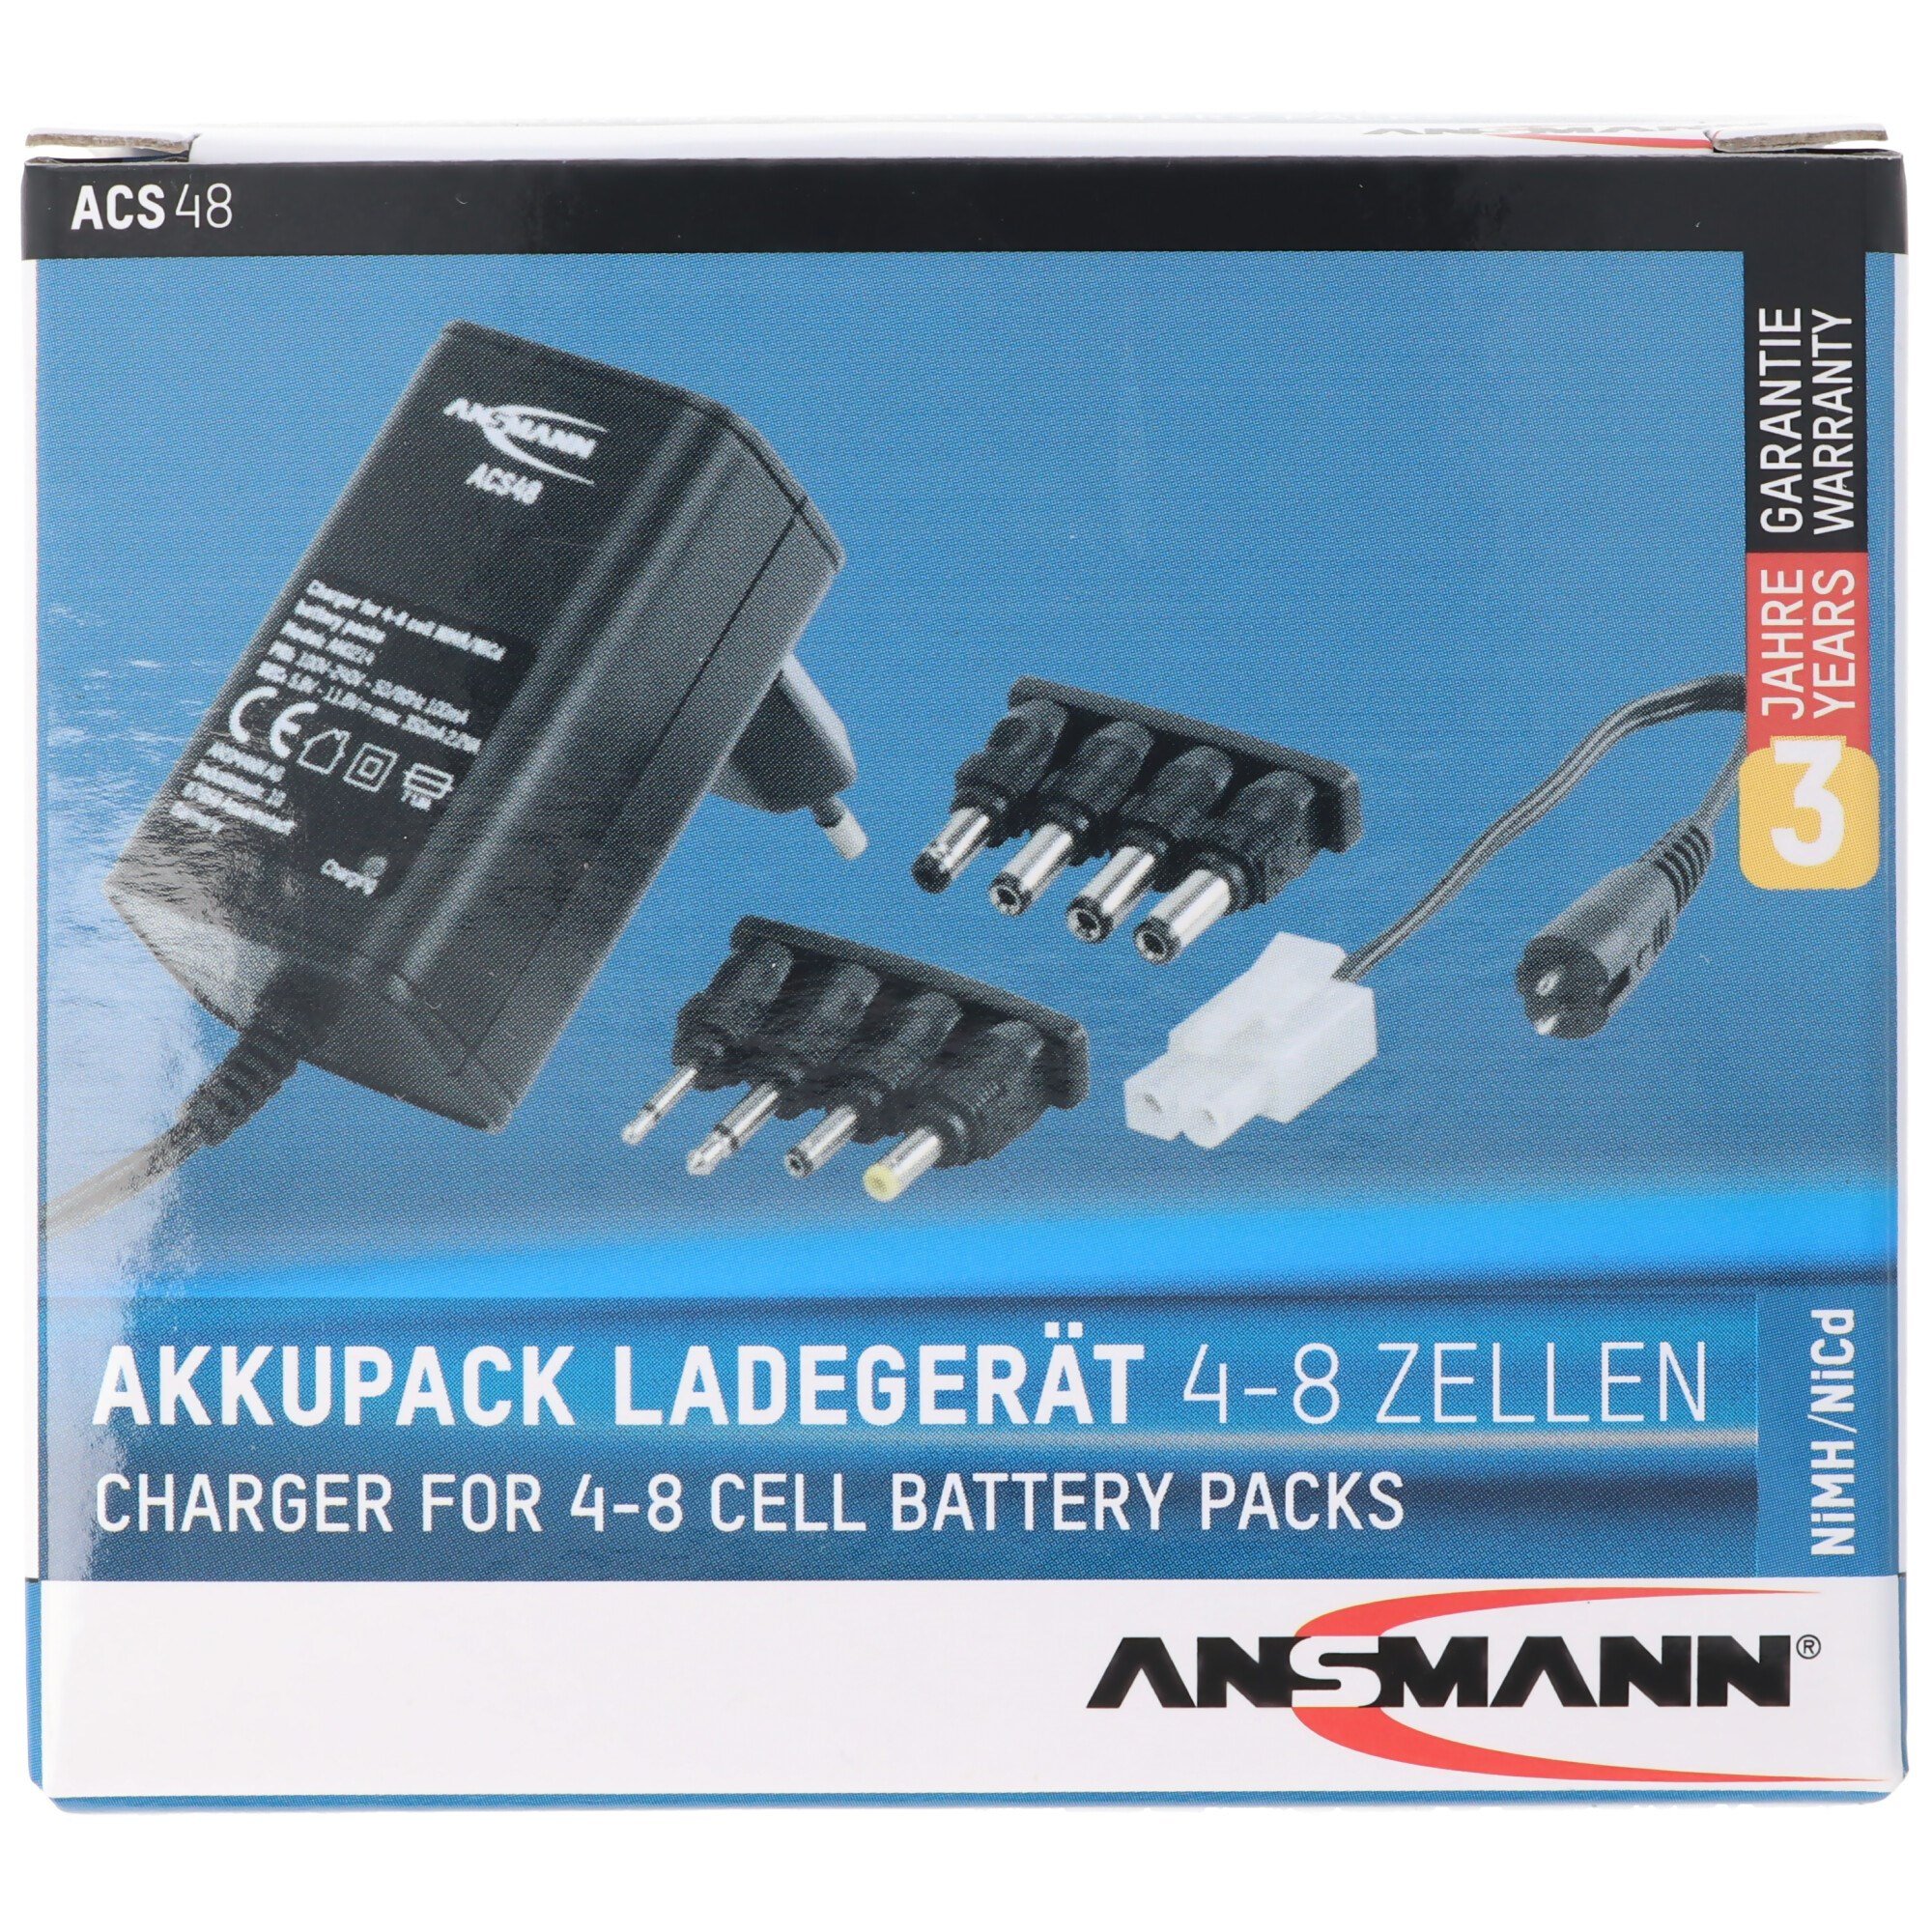 Ansmann şarj cihazı ACS48 1001-0024 için 4.8 - 9.6 volt pil paketleri